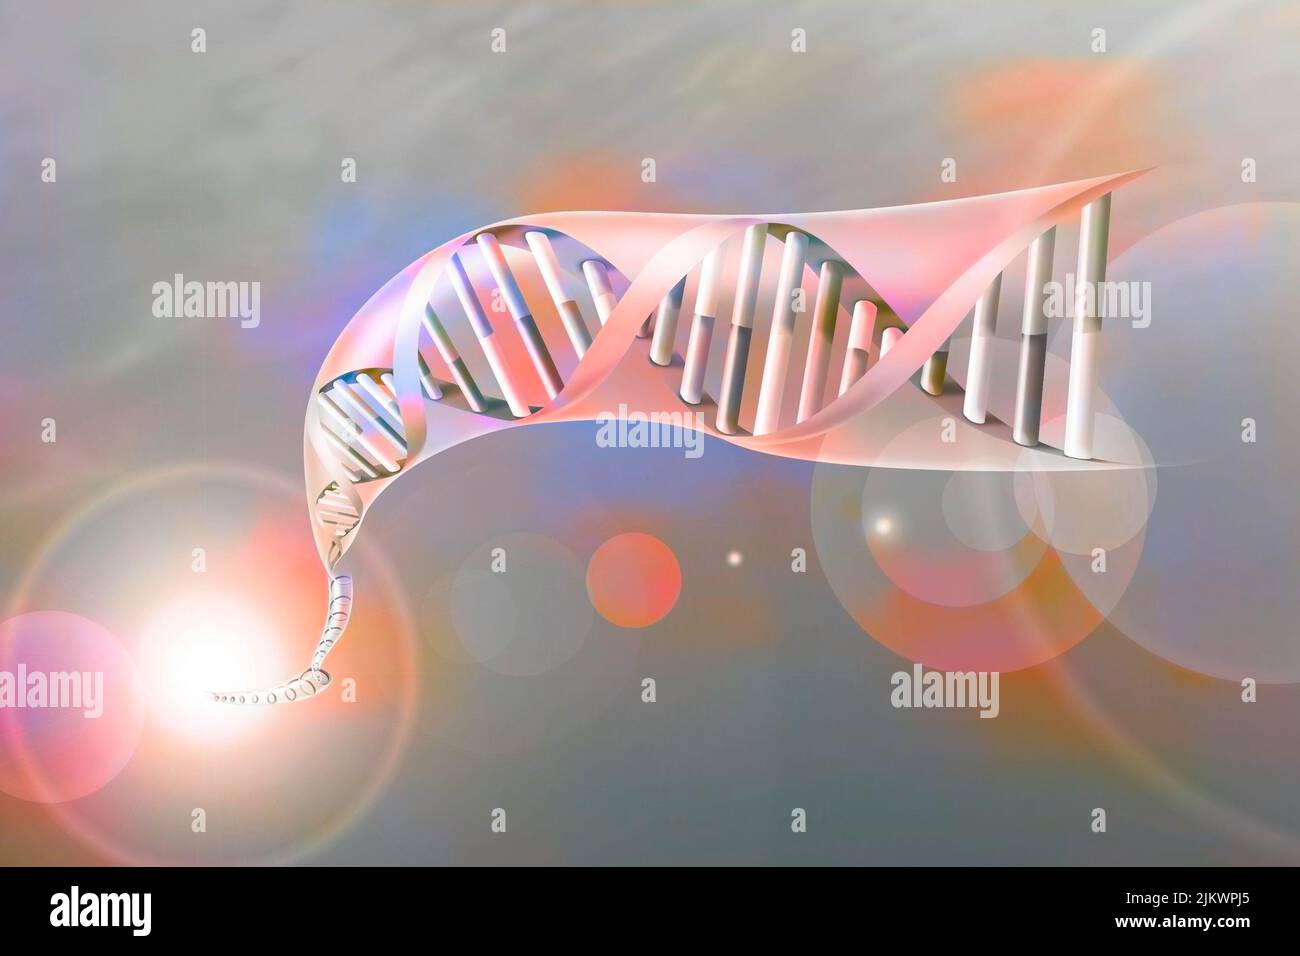 Doppia elica di DNA con le basi nucleotidiche: Adenina, timina, citosina e guanina. Foto Stock